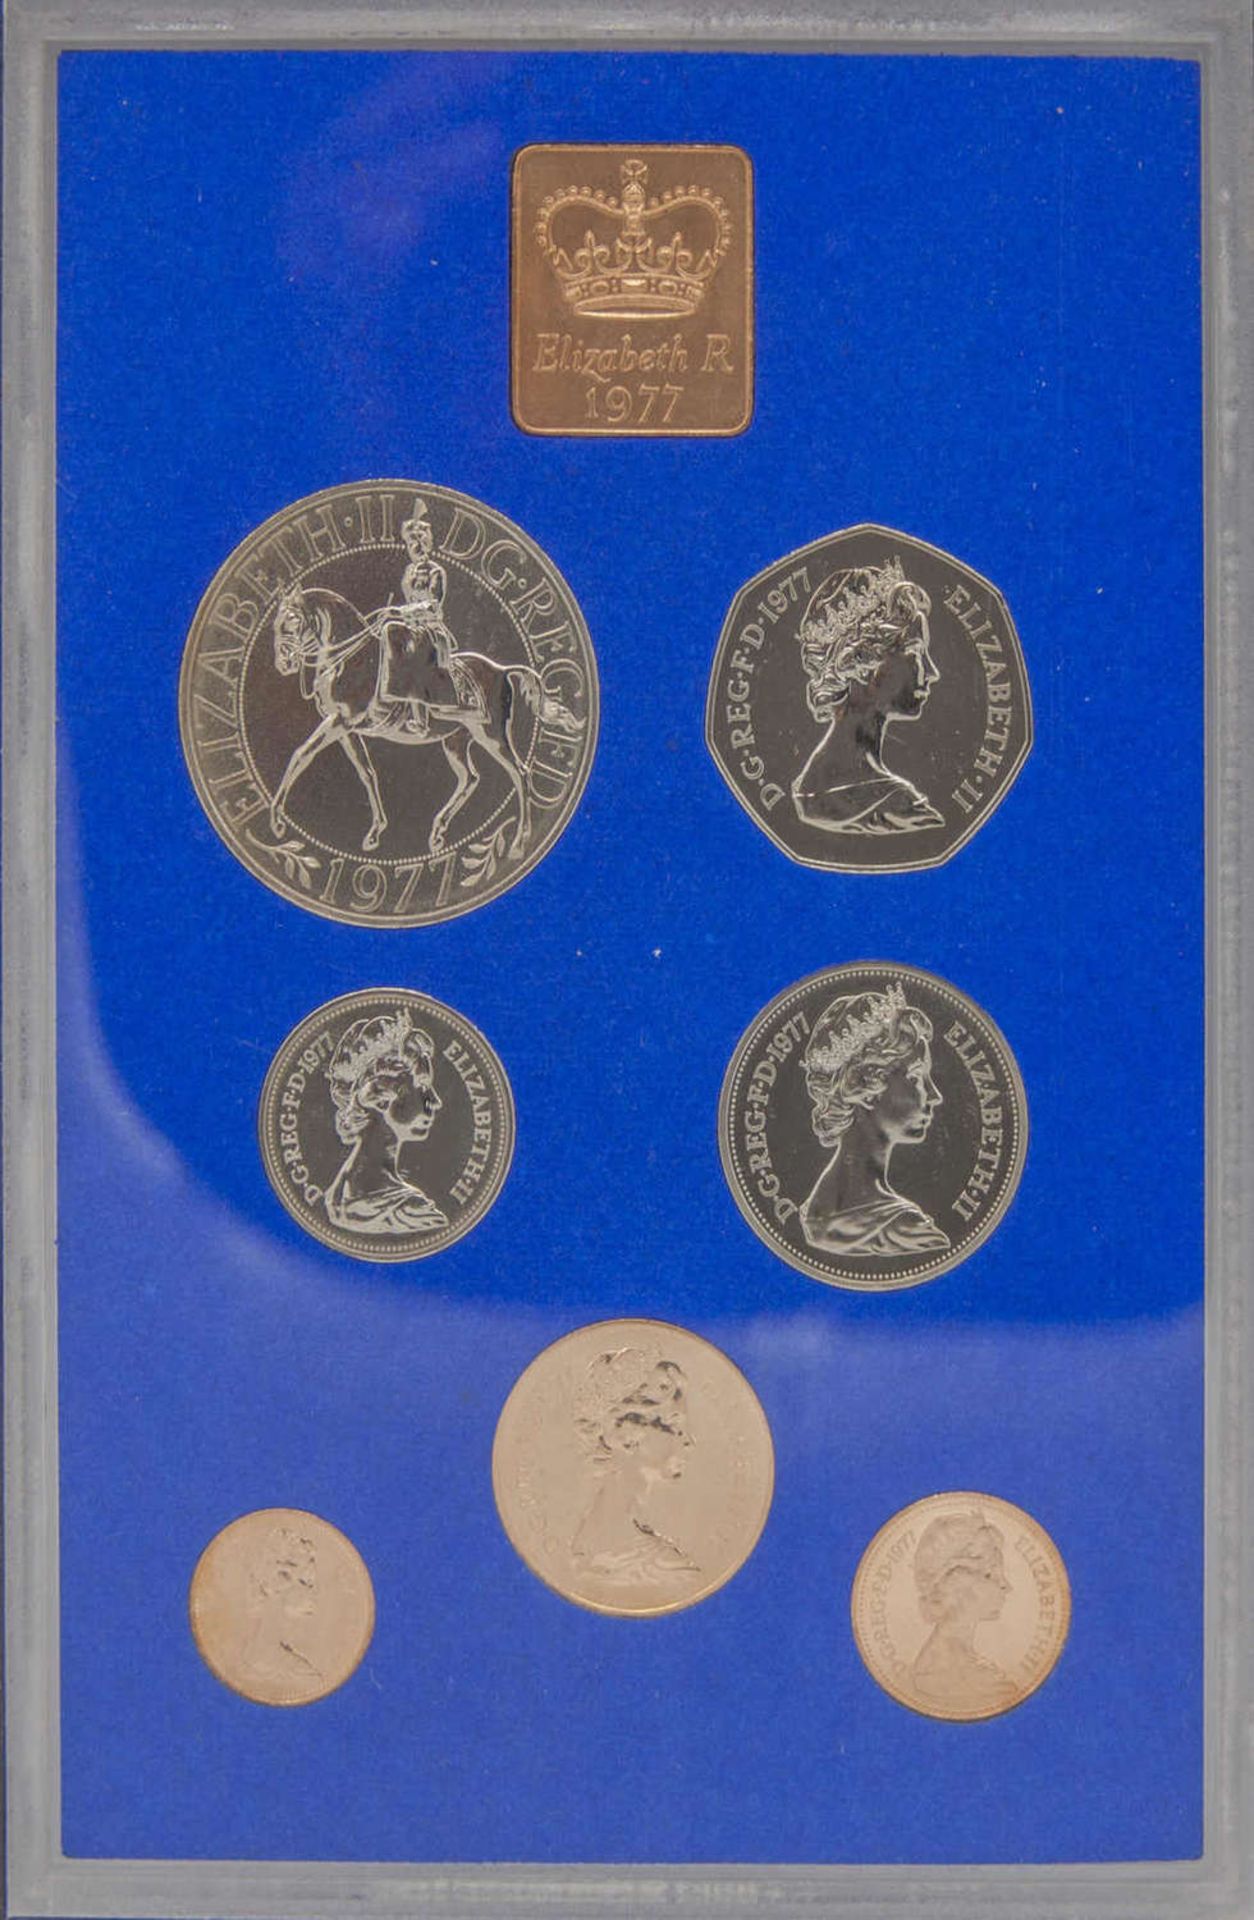 Sammel - Album "Die Münzen zum 25 jährigen Regierungsjubiläum von Königin Elizabeth II.",